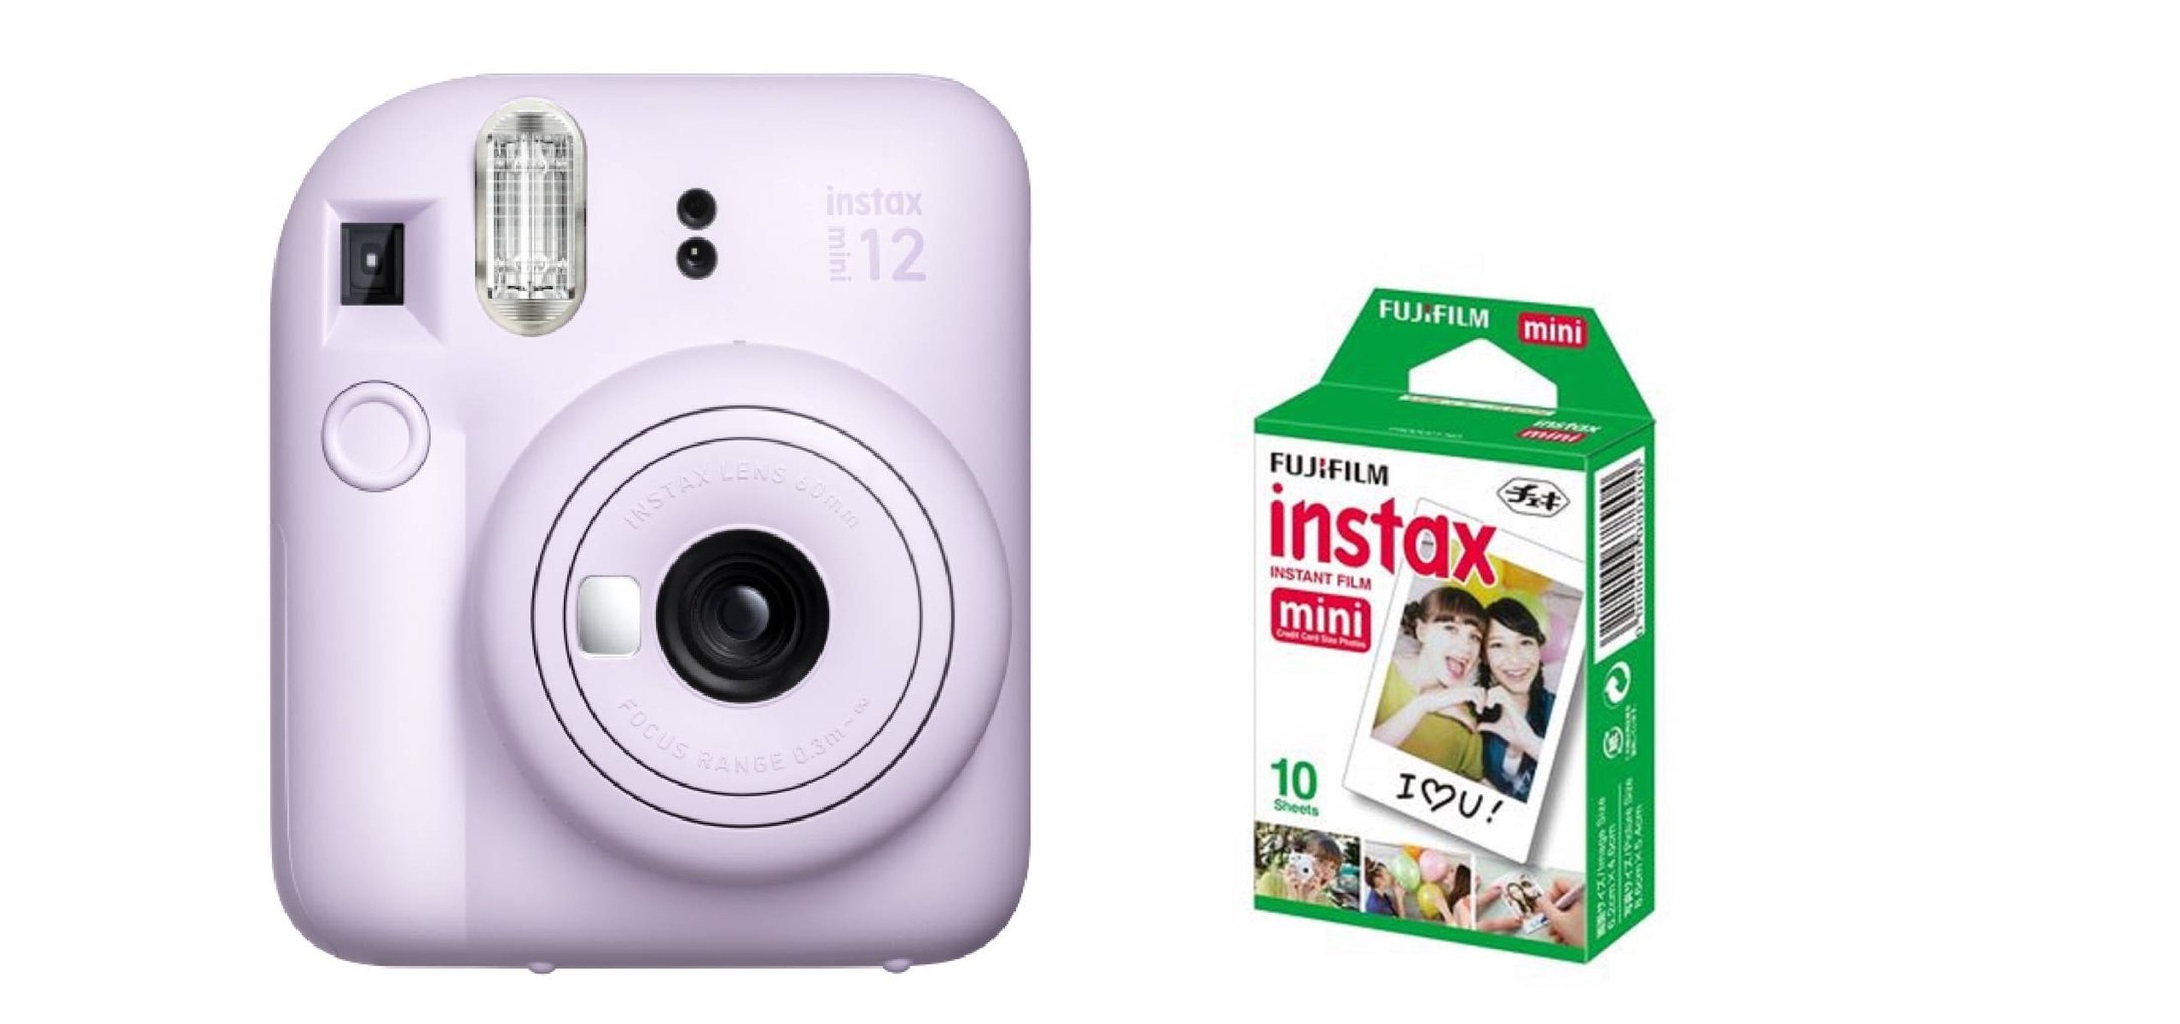 FujiFilm Instax Mini 12 Instant Camera, 60mm - Lilac Purple, with Instax Mini Film Sheets - 10 Packs